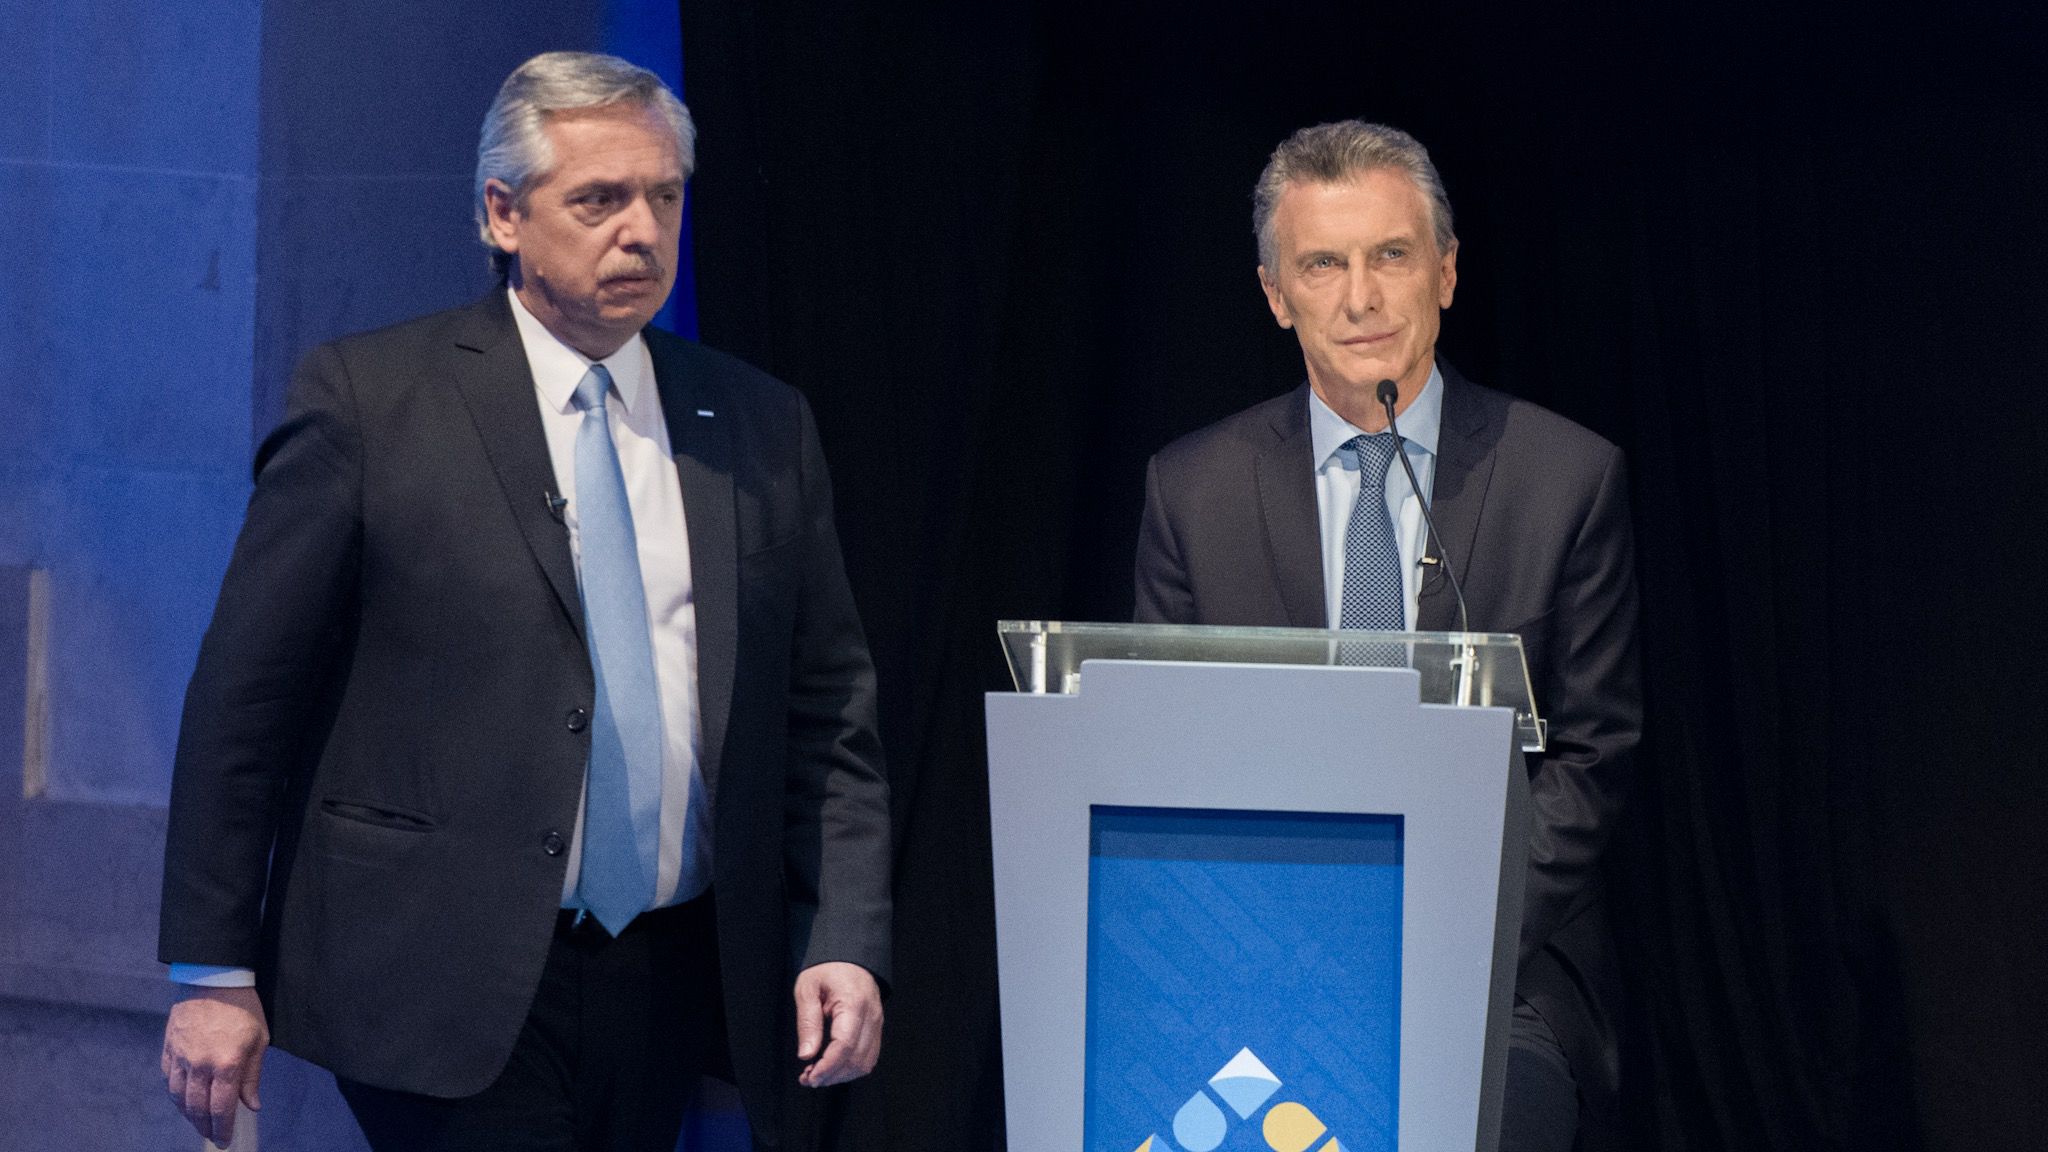 Alberto Fernández cuestionó a Macri sobre la política exterior sobre Malvinas en el debate presidencial (Adrián Escandar)